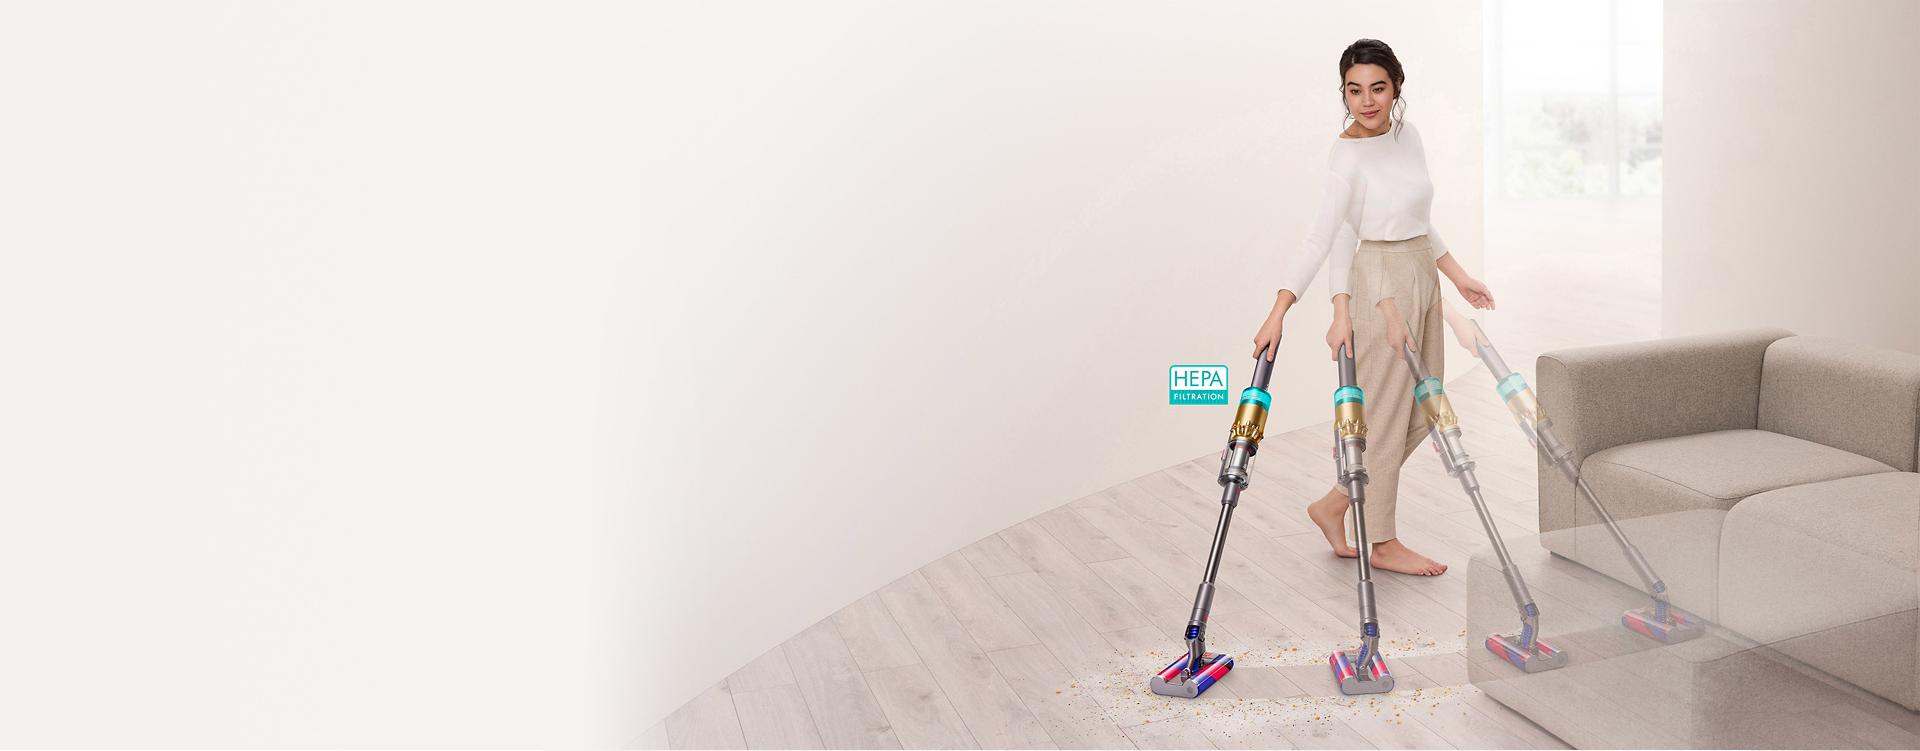 다이슨 옴니-글라이드™ 무선 청소기로 소파 주변의 마룻바닥을 청소하는 여성.